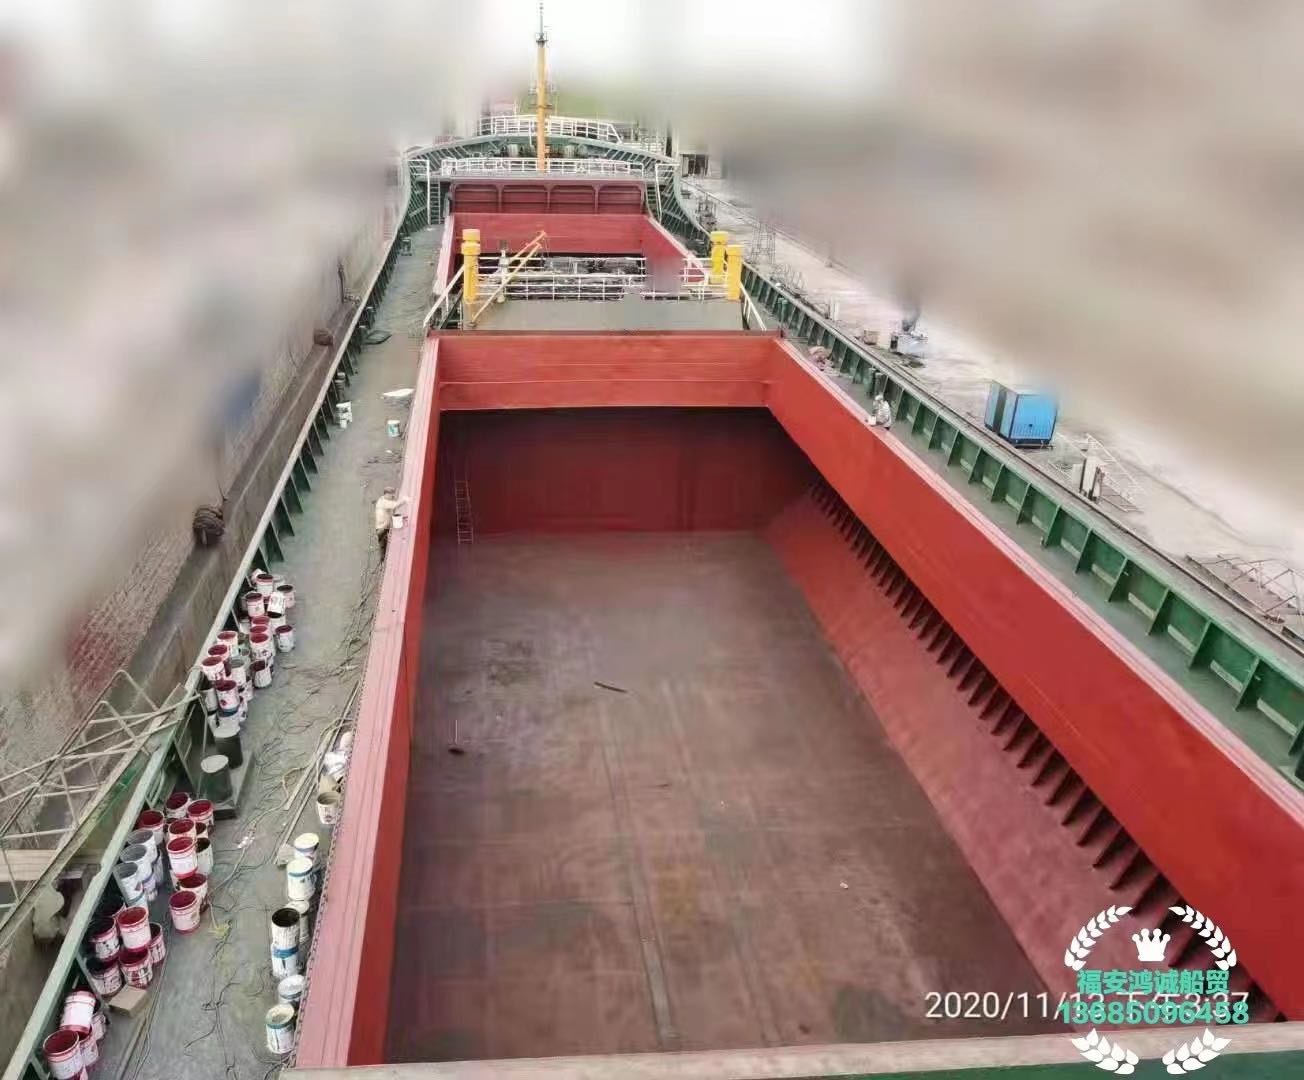 出售2009年造5060吨散货船